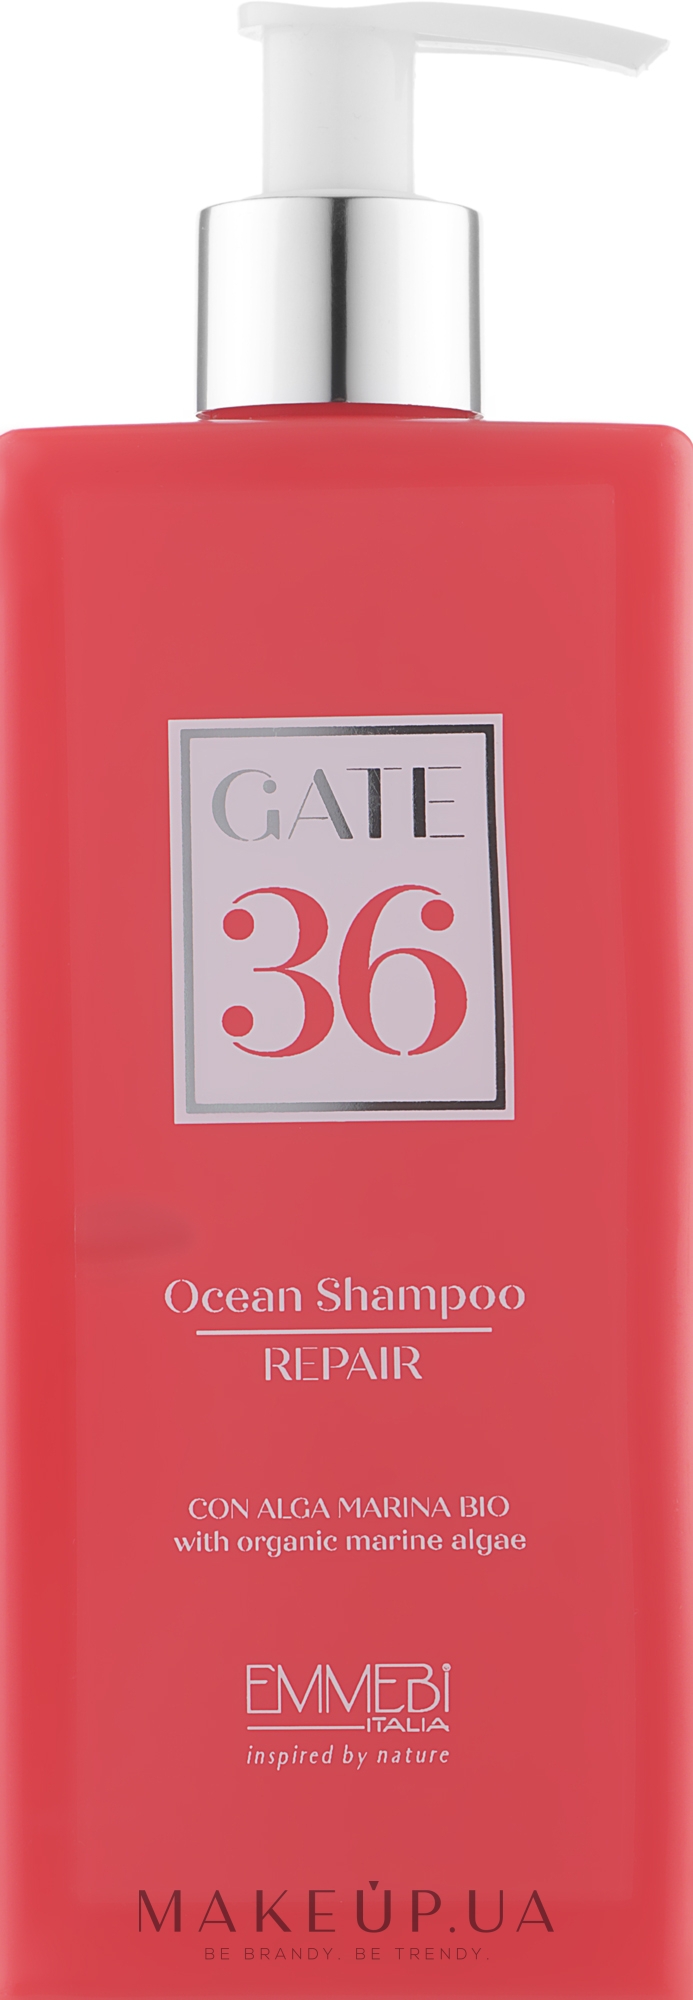 Відновлювальний шампунь для волосся - Emmebi Italia Gate 36 Wash Ocean Shampoo Repair — фото 250ml